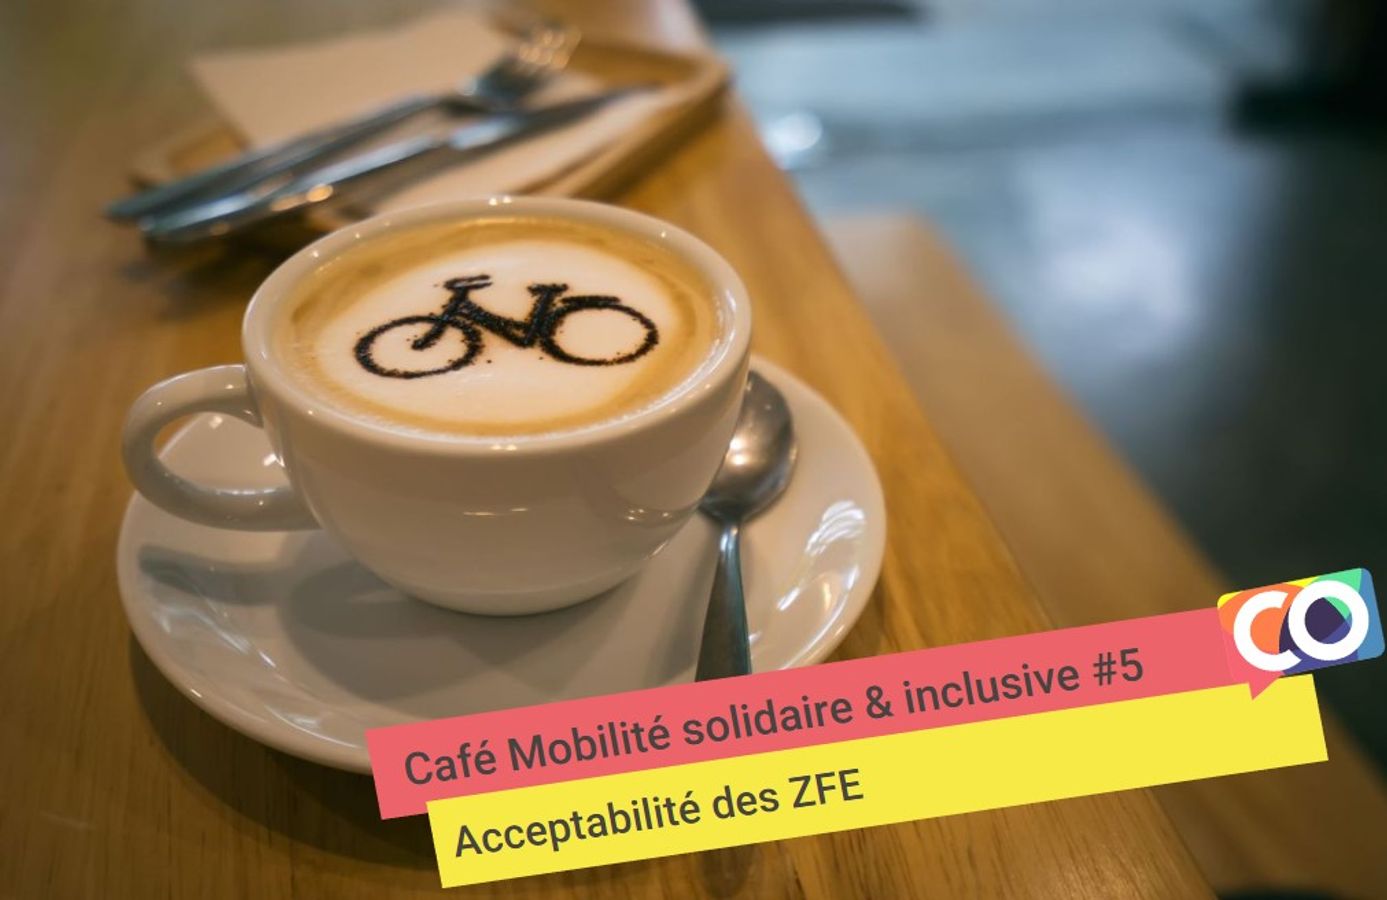 🗣 Café mobilité solidaire & inclusive: Acceptabilité des ZFE